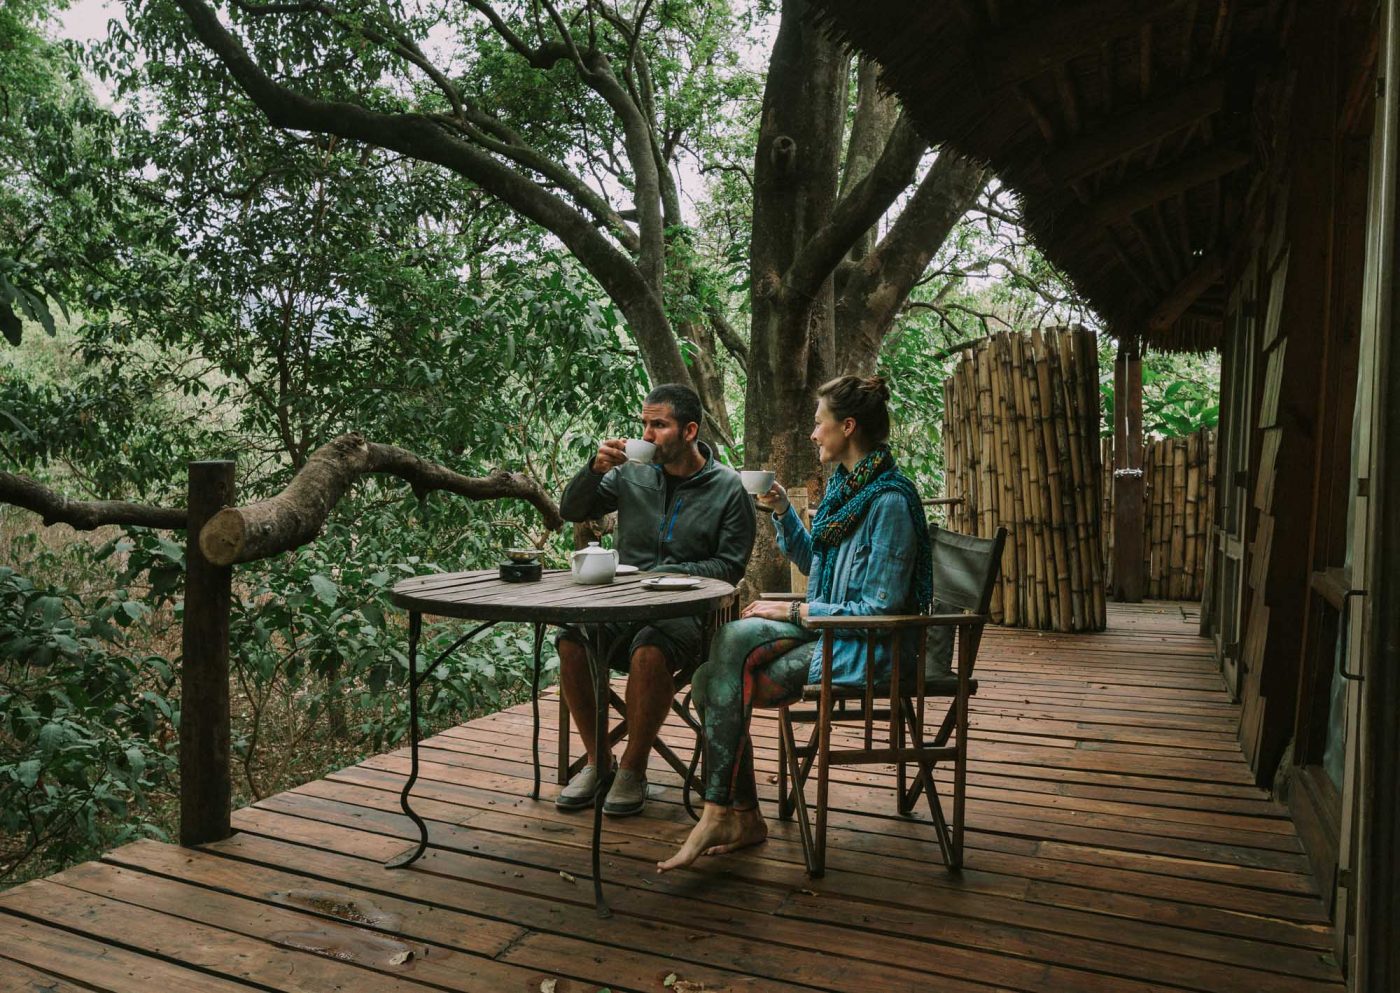 Enjoying our morning tea at the &Beyond Lake Manyara Lodge